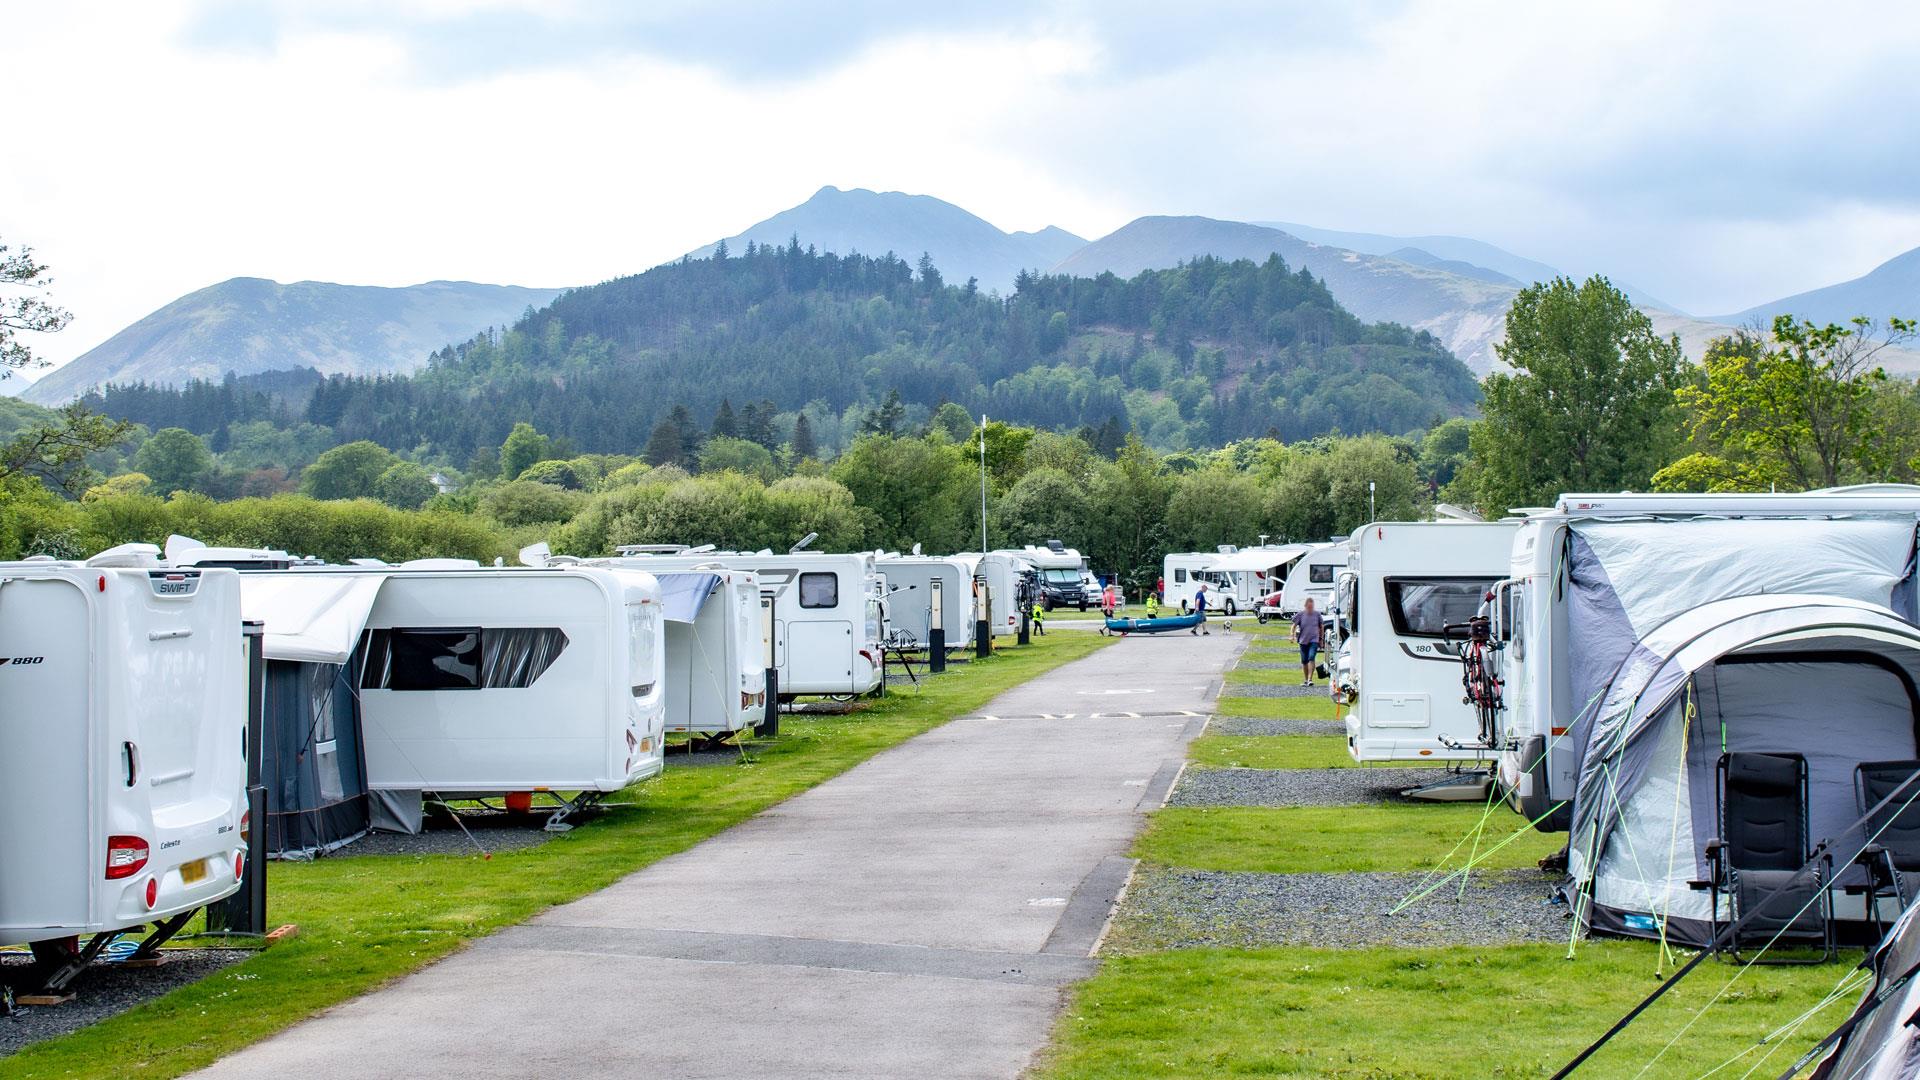 Keswick campsite in the Lake District